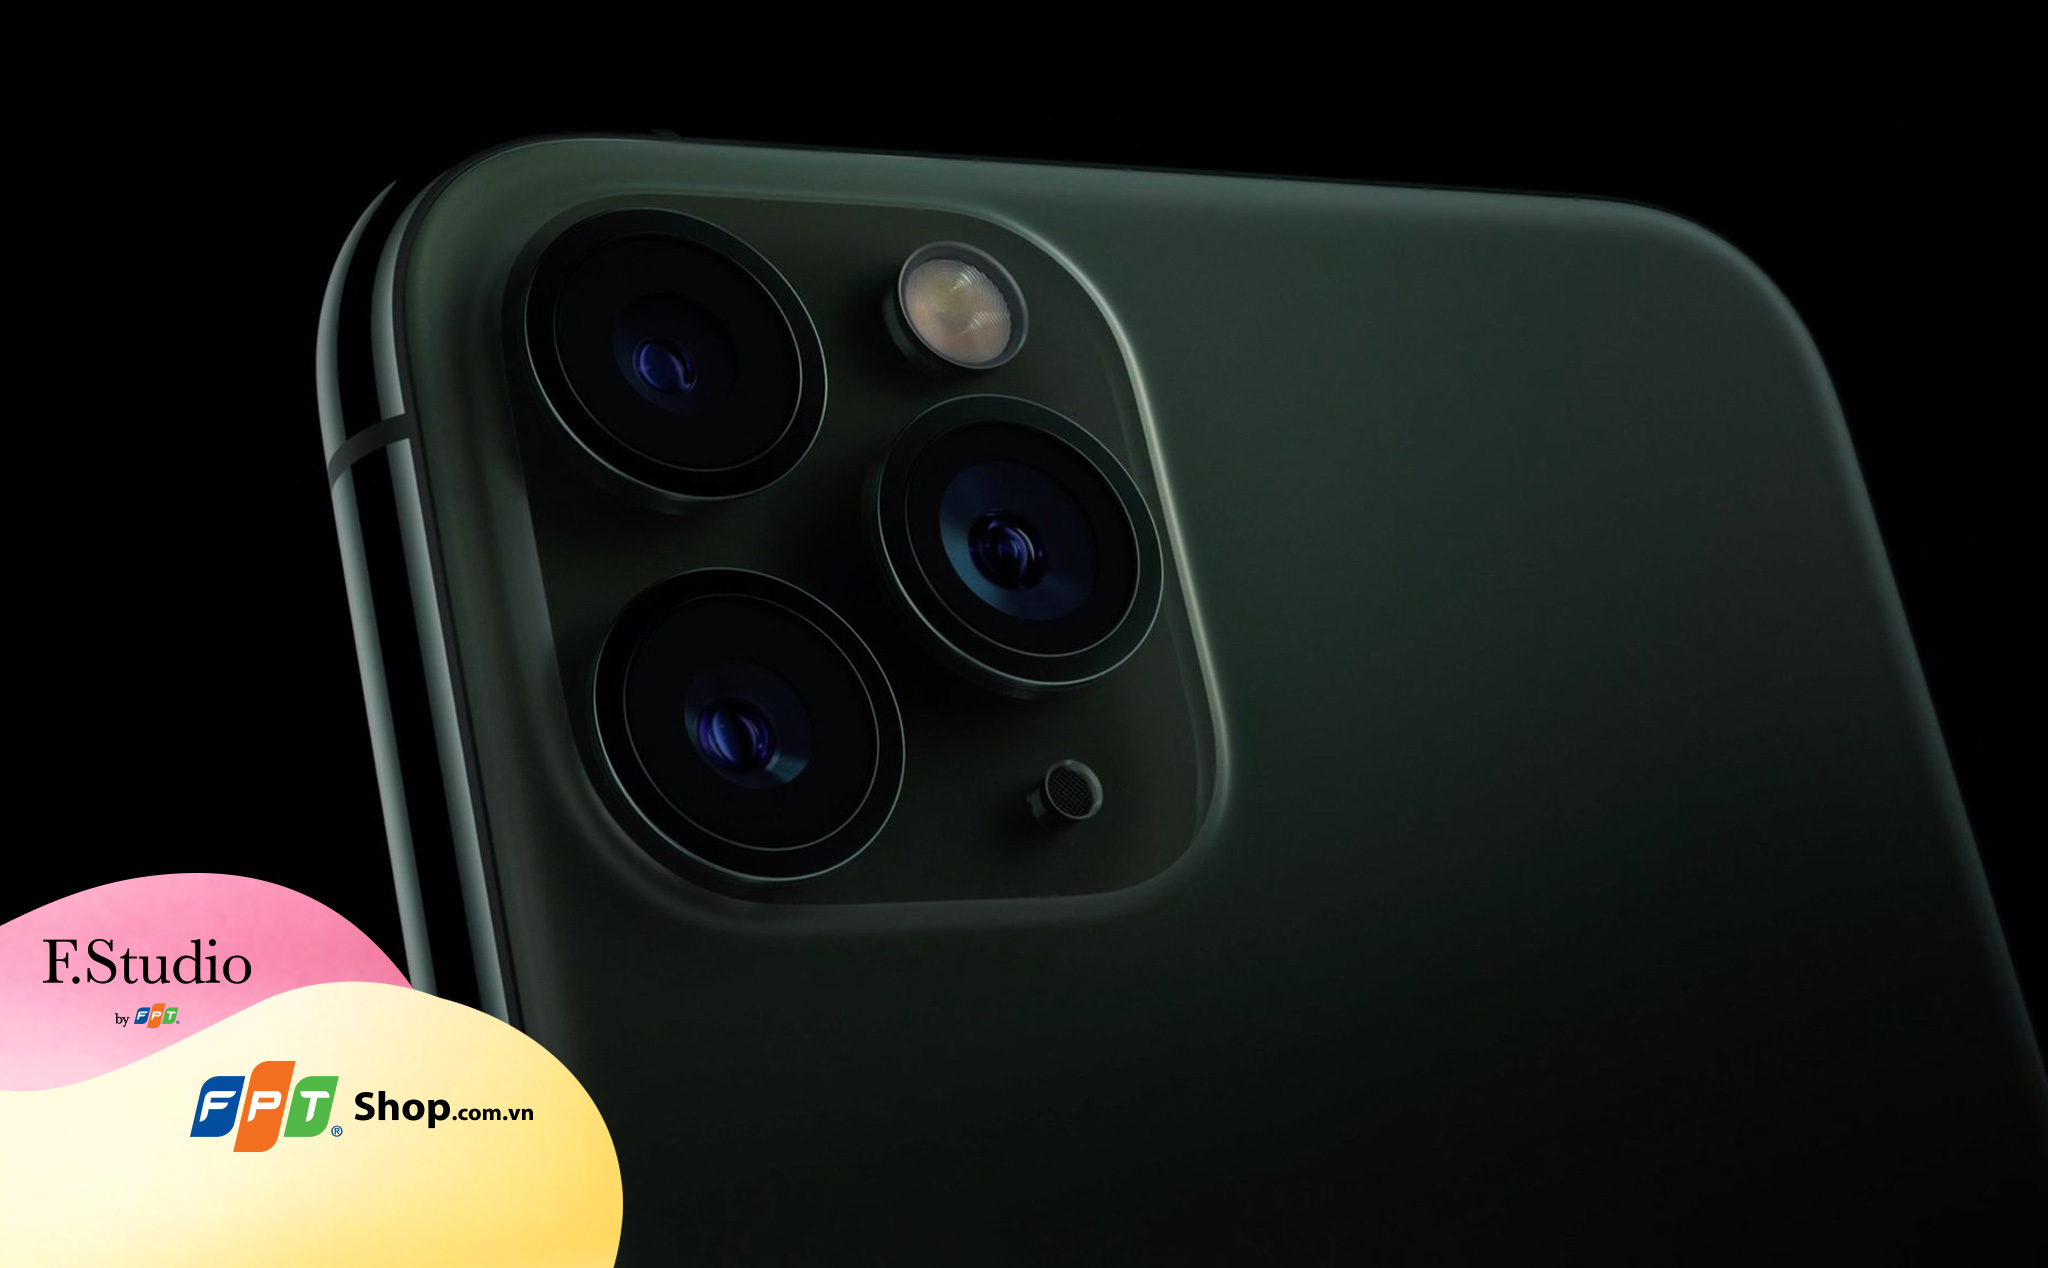 iPhone 11 Pro / Pro Max: cụm 3 camera, màu mới, chip A13 Bionic, sạc 18W, giá từ 999 Mỹ kim